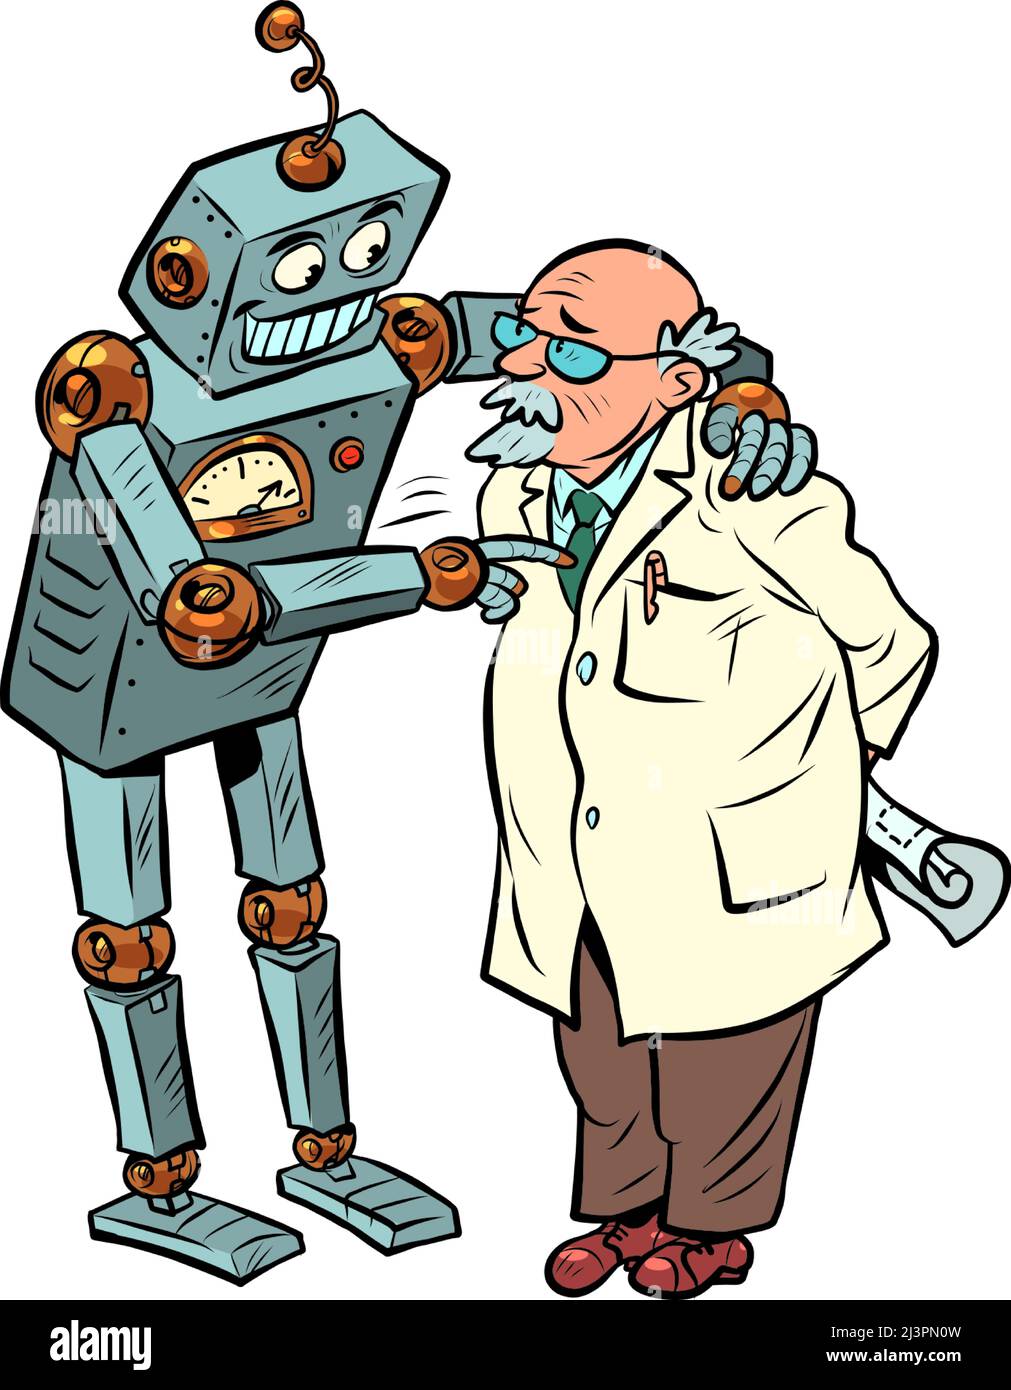 Der Roboter spricht mit dem Professor, der künstlichen Intelligenz und dem menschlichen Geist. Zwei Freunde Stock Vektor